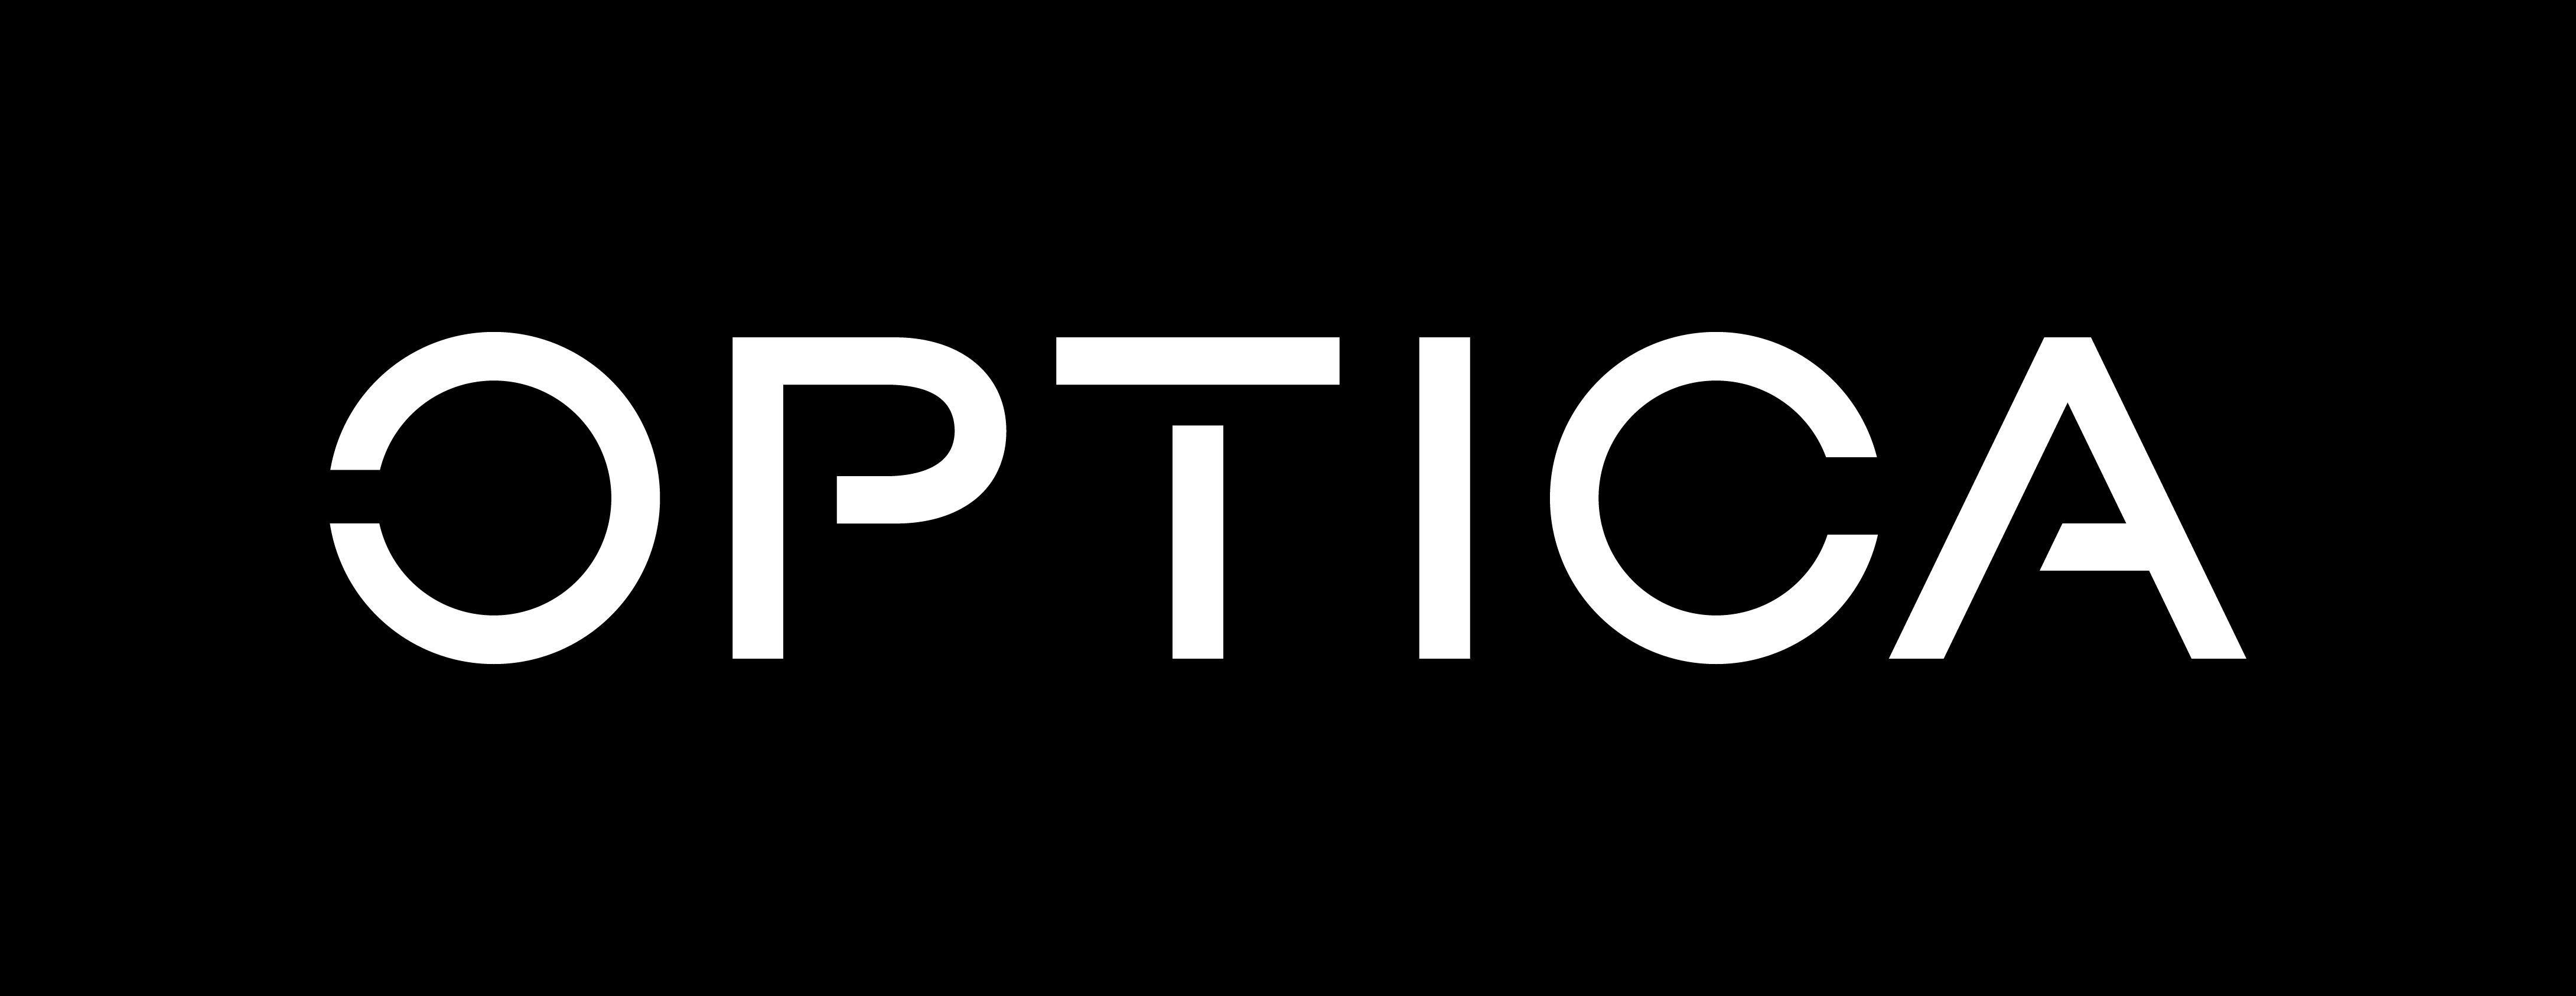 Optica Publishing Group